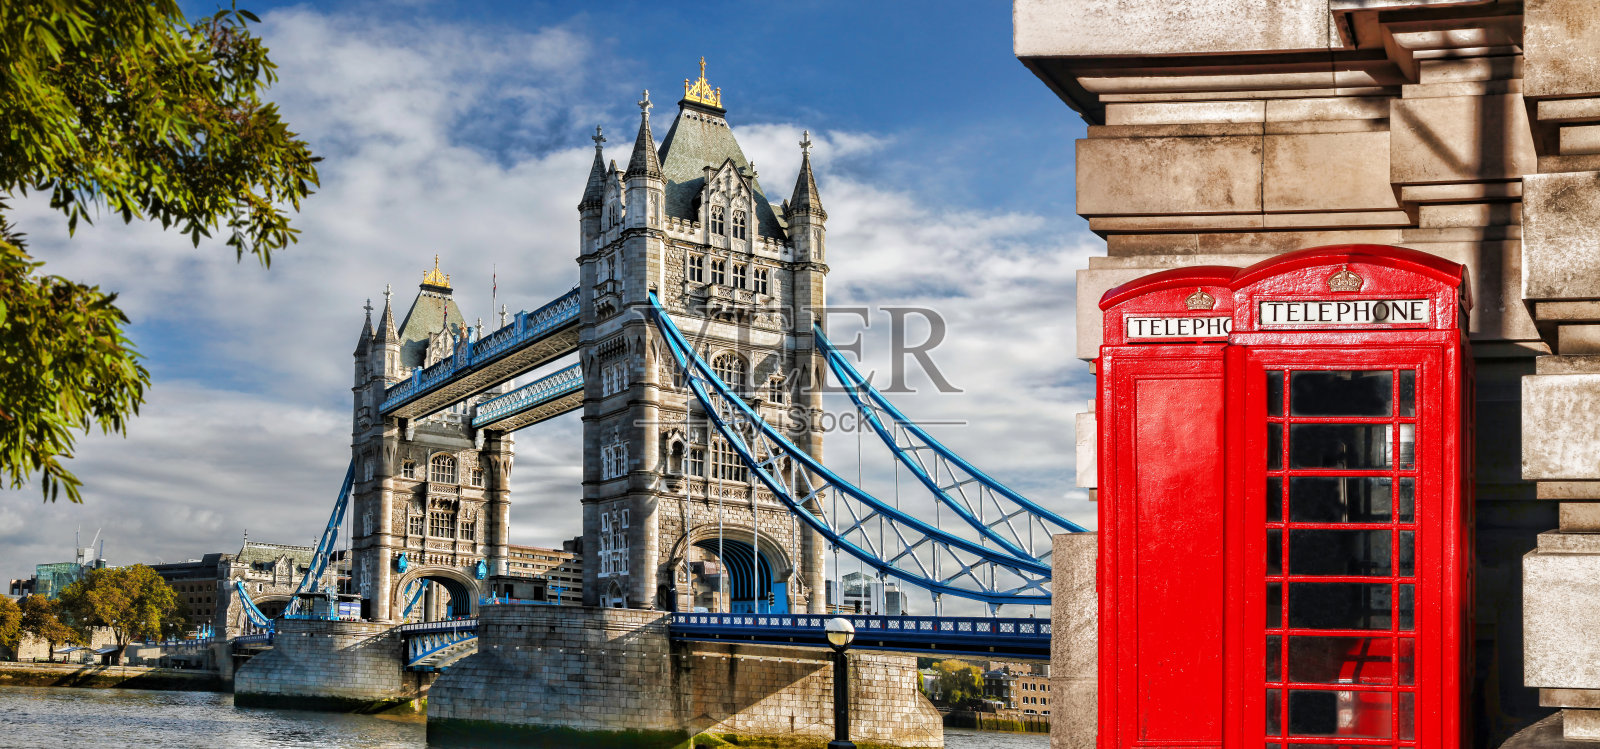 英国伦敦塔桥上的红色电话亭照片摄影图片